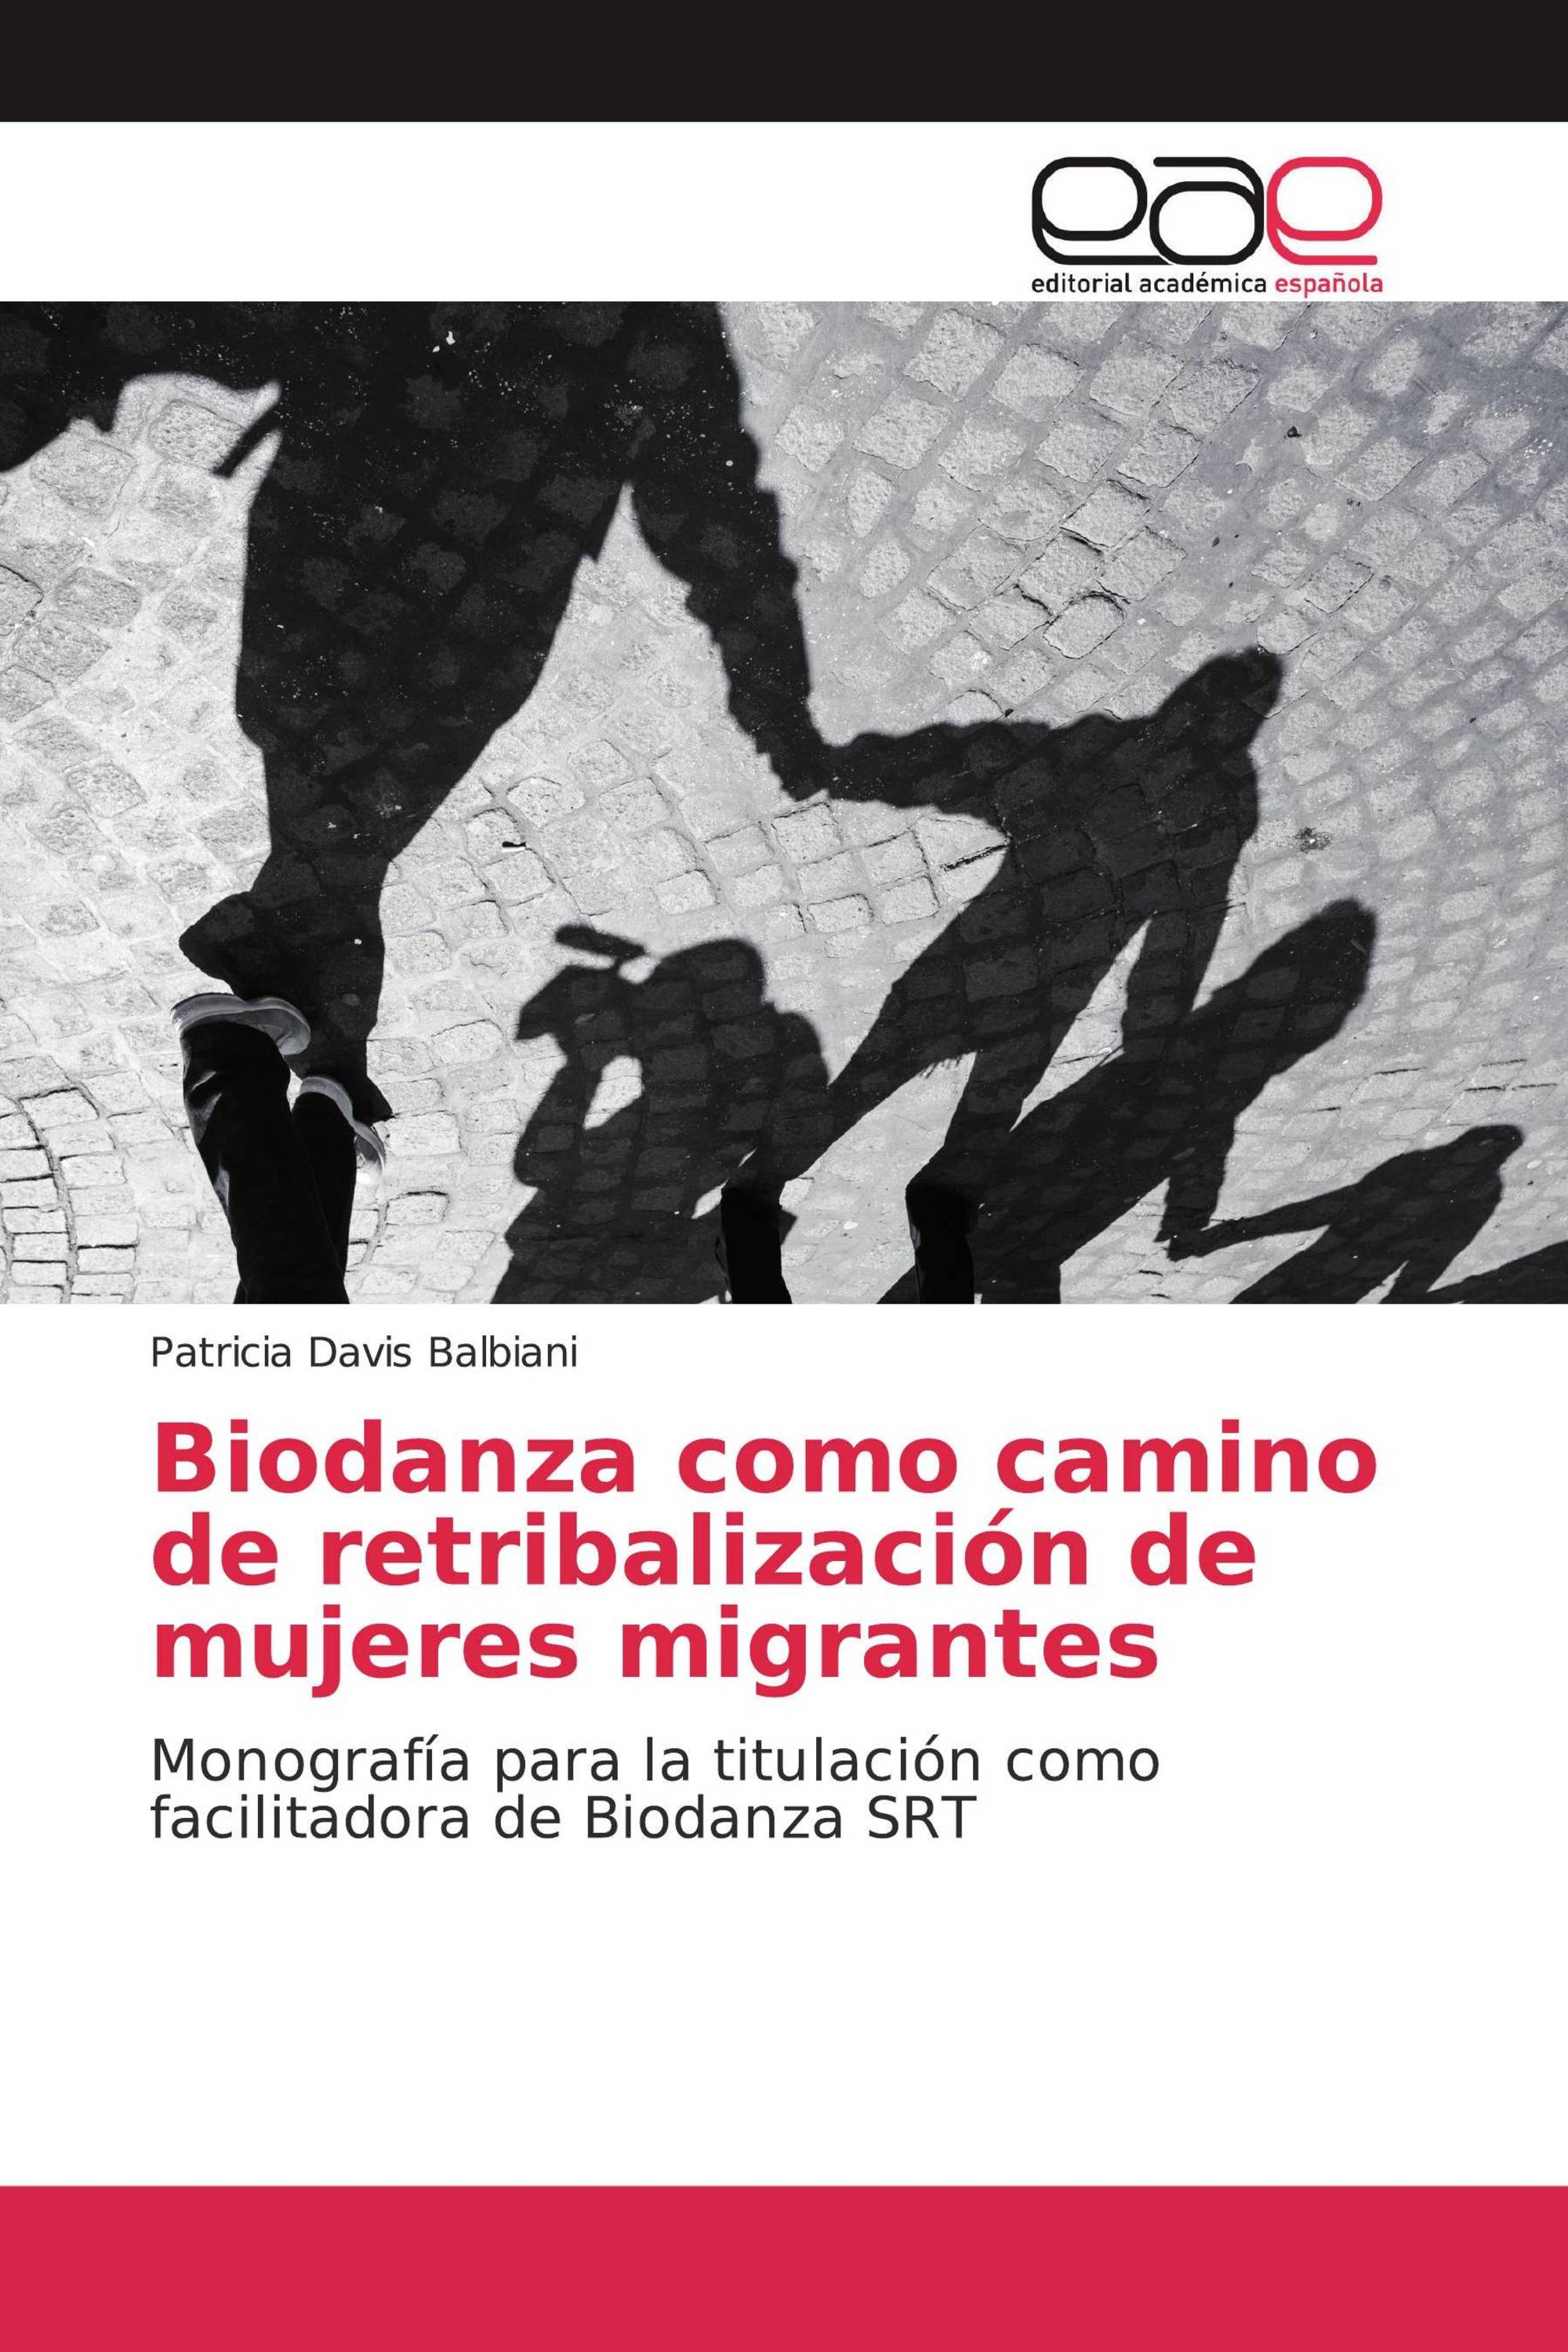 Biodanza como camino de retribalización de mujeres migrantes